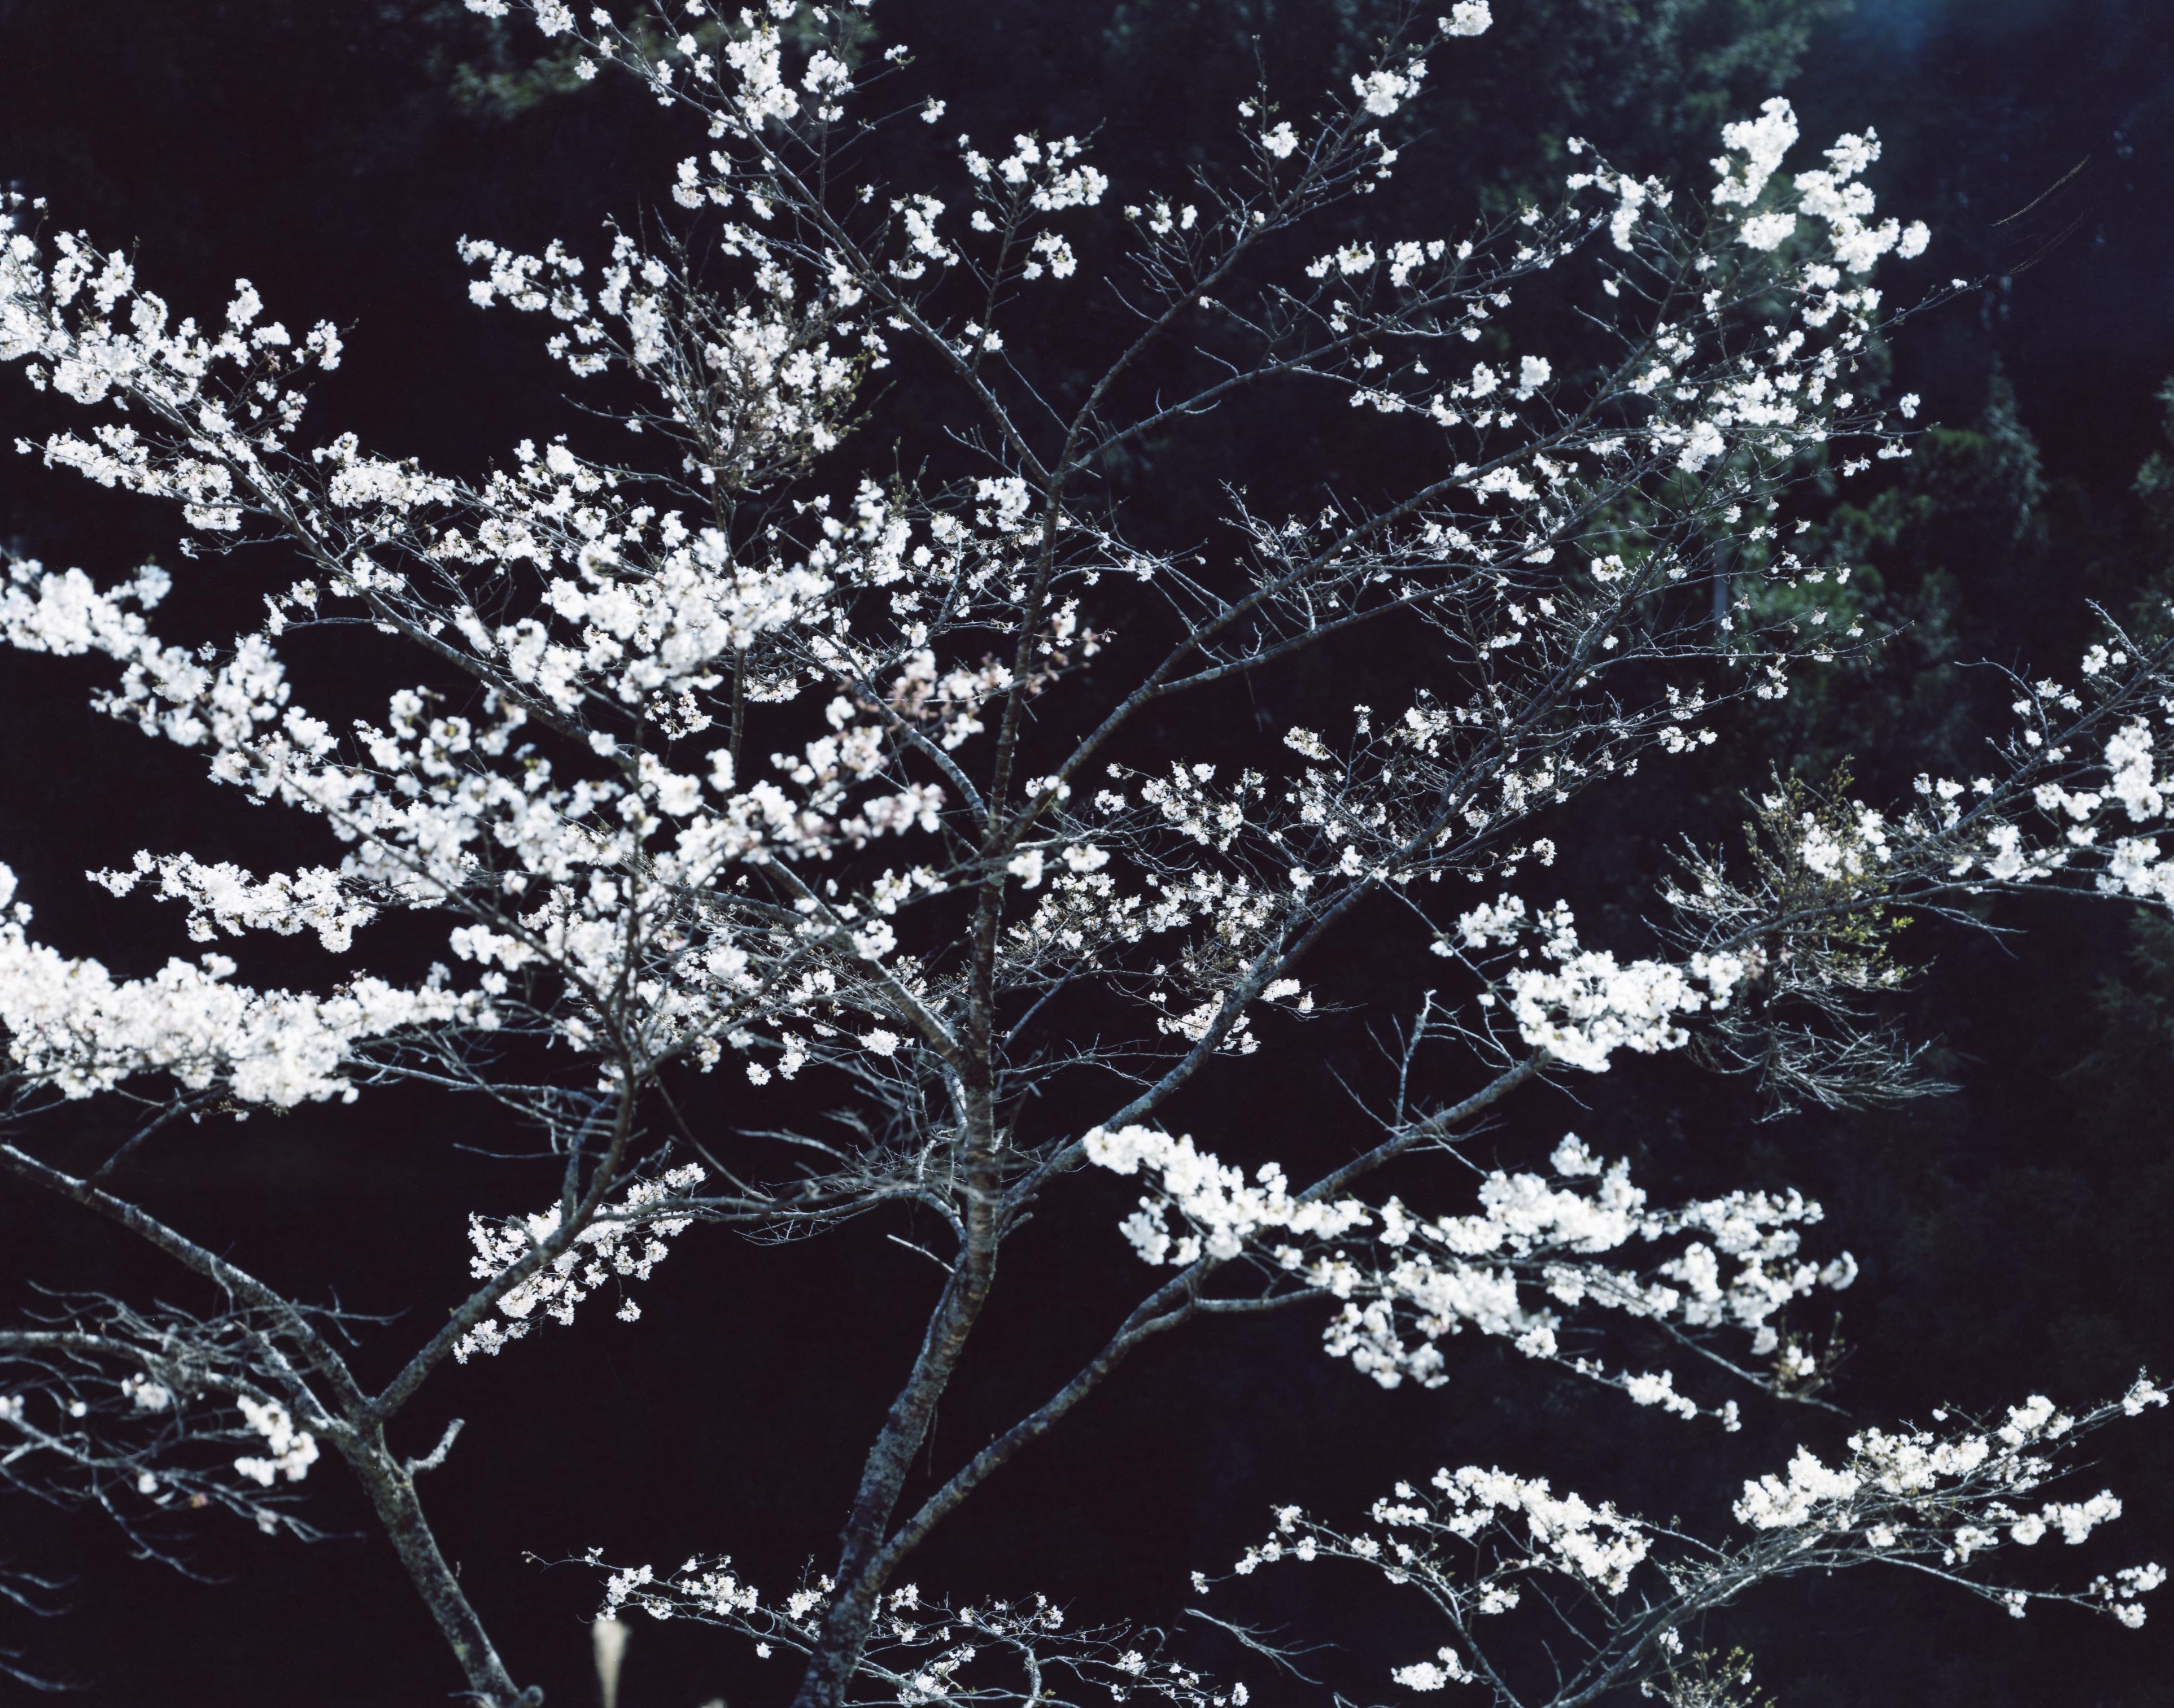 SAKURA 13,4-152 – Risaku Suzuki, Night, Tree, Spring, Cherry Blossom, Japan Art